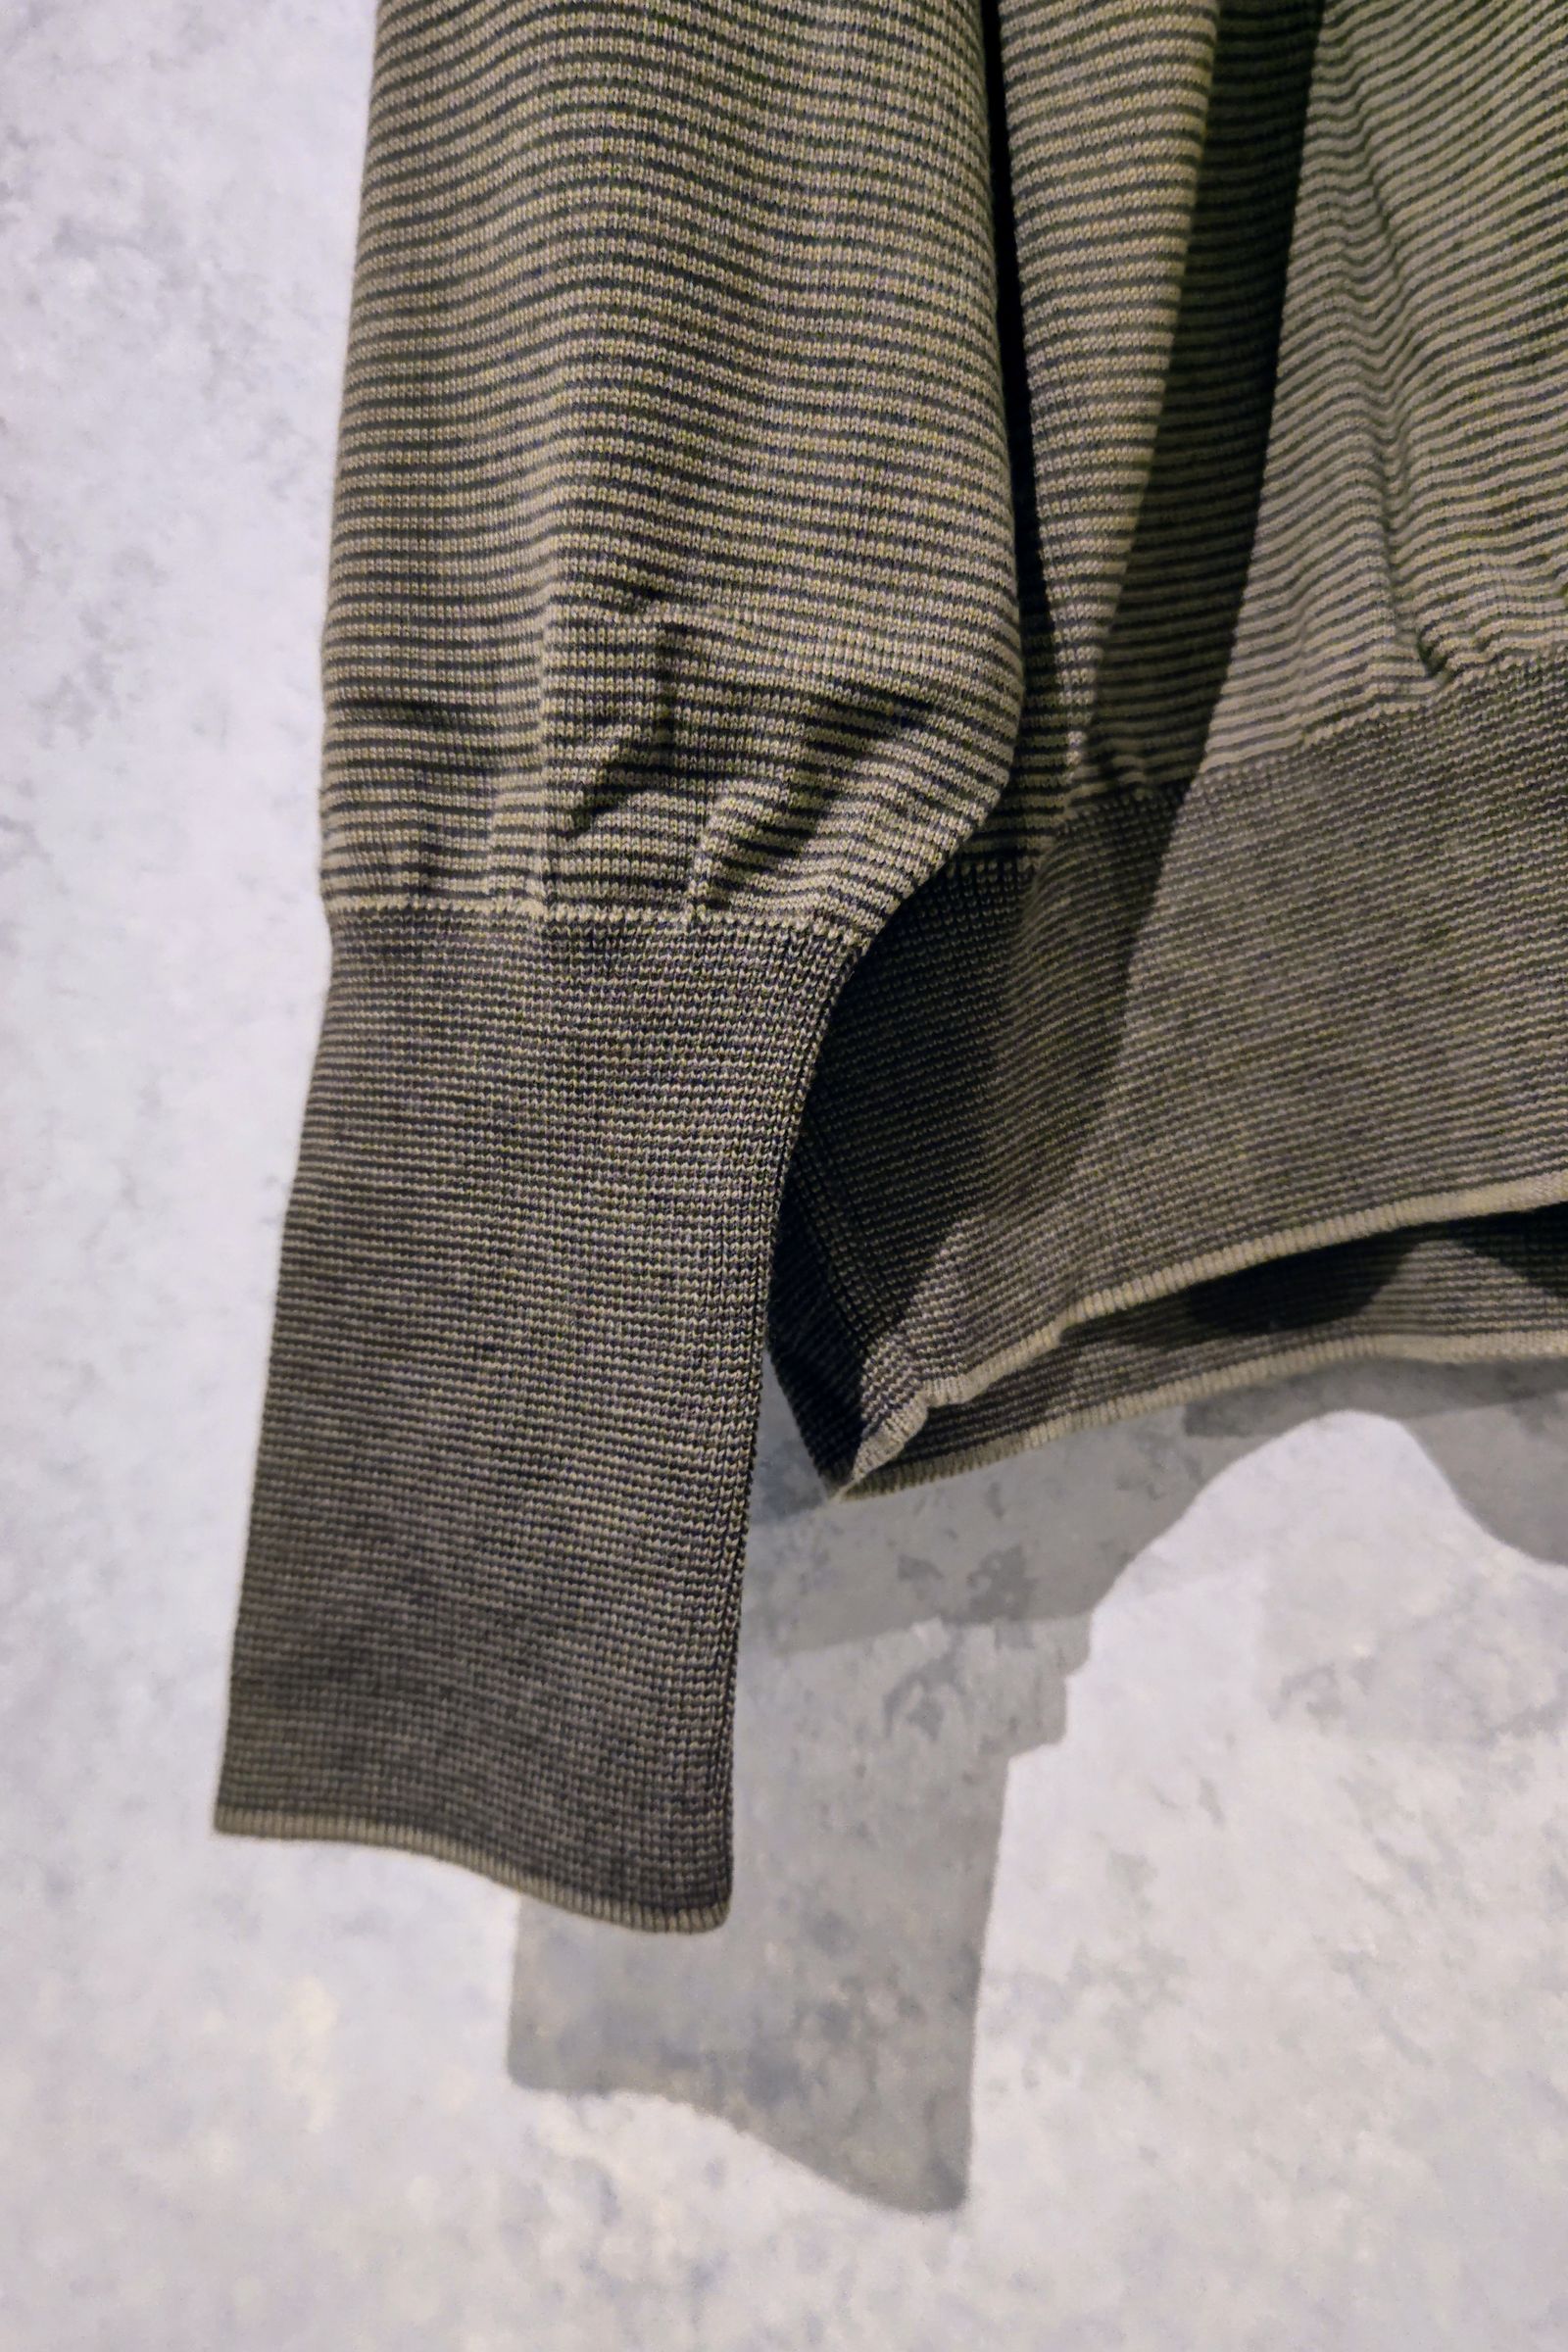 A.PRESSE - L/S ニット ポロシャツ L/S Knit Polo Shirt -stripe